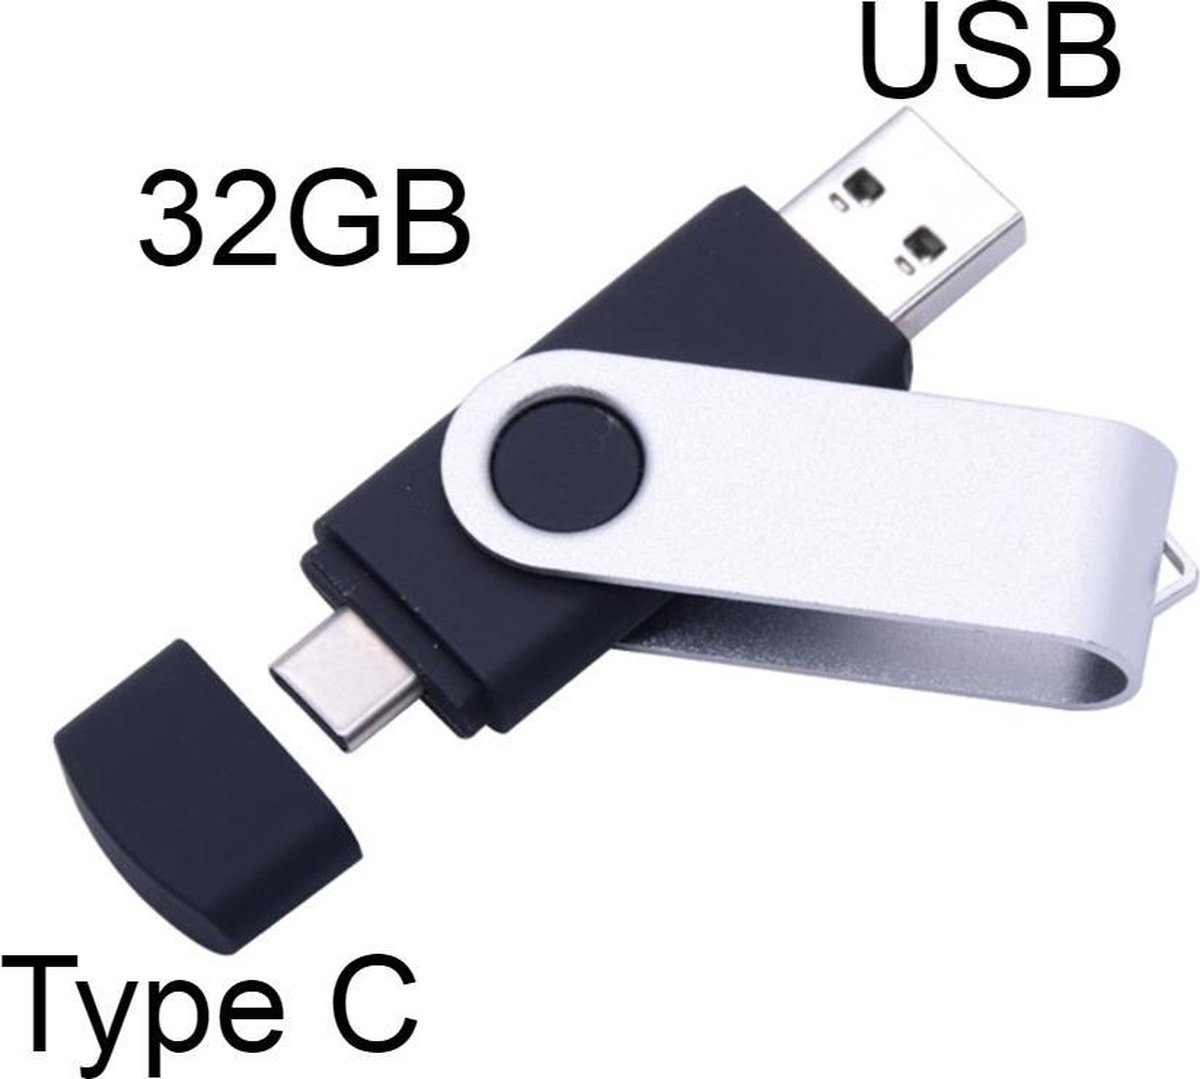 Stuks USB-C USB 3.0 Stick - 2 in 1 Geheugen stick - Flash Drive - 32GB Voor USB... | bol.com